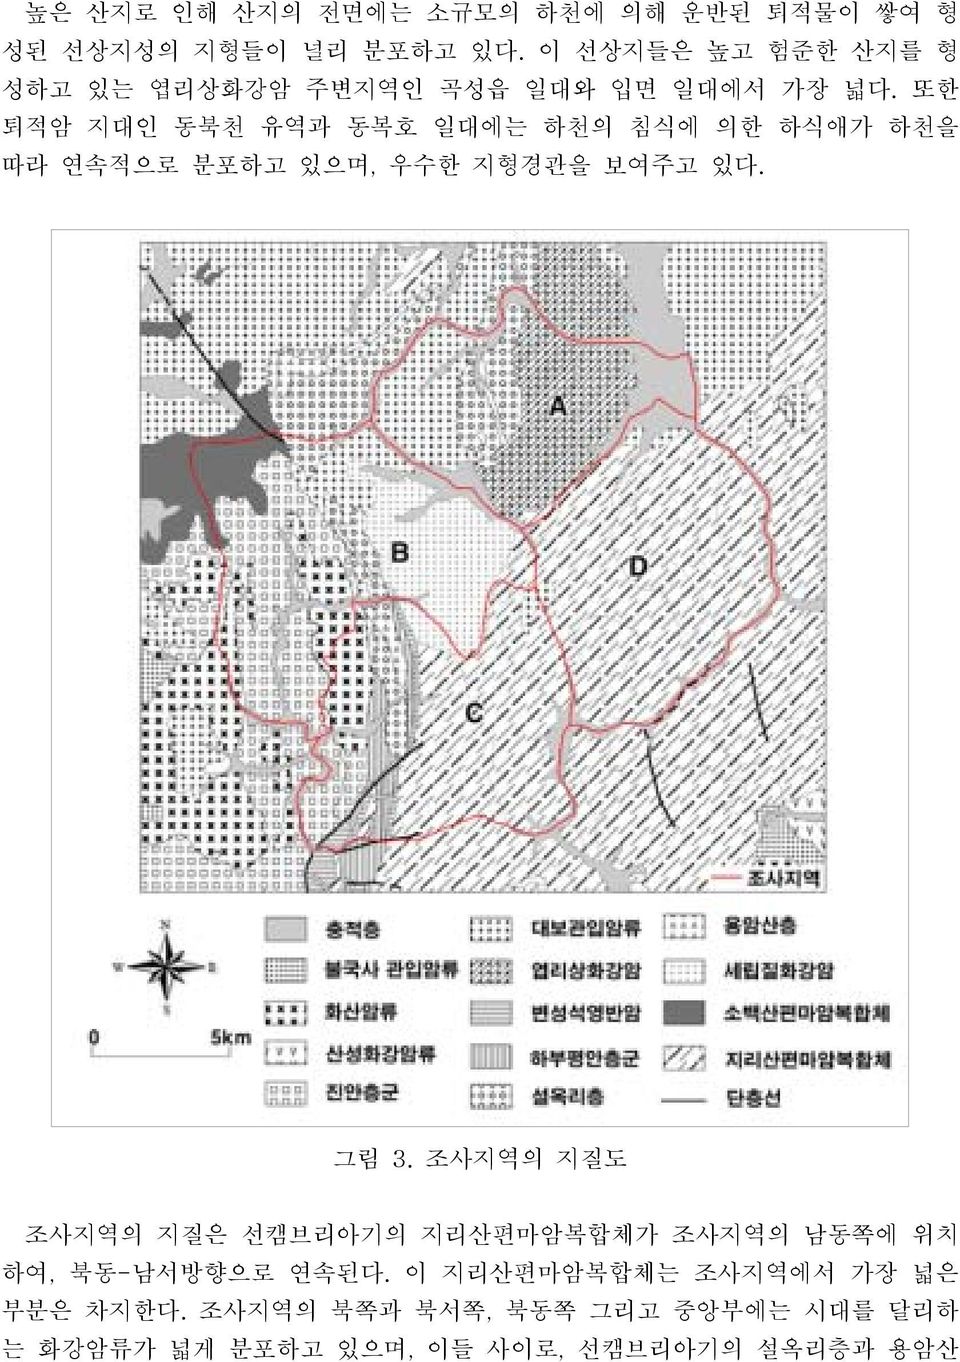 또한 퇴적암 지대인 동북천 유역과 동복호 일대에는 하천의 침식에 의한 하식애가 하천을 따라 연속적으로 분포하고 있으며, 우수한 지형경관을 보여주고 있다. 그림 3.